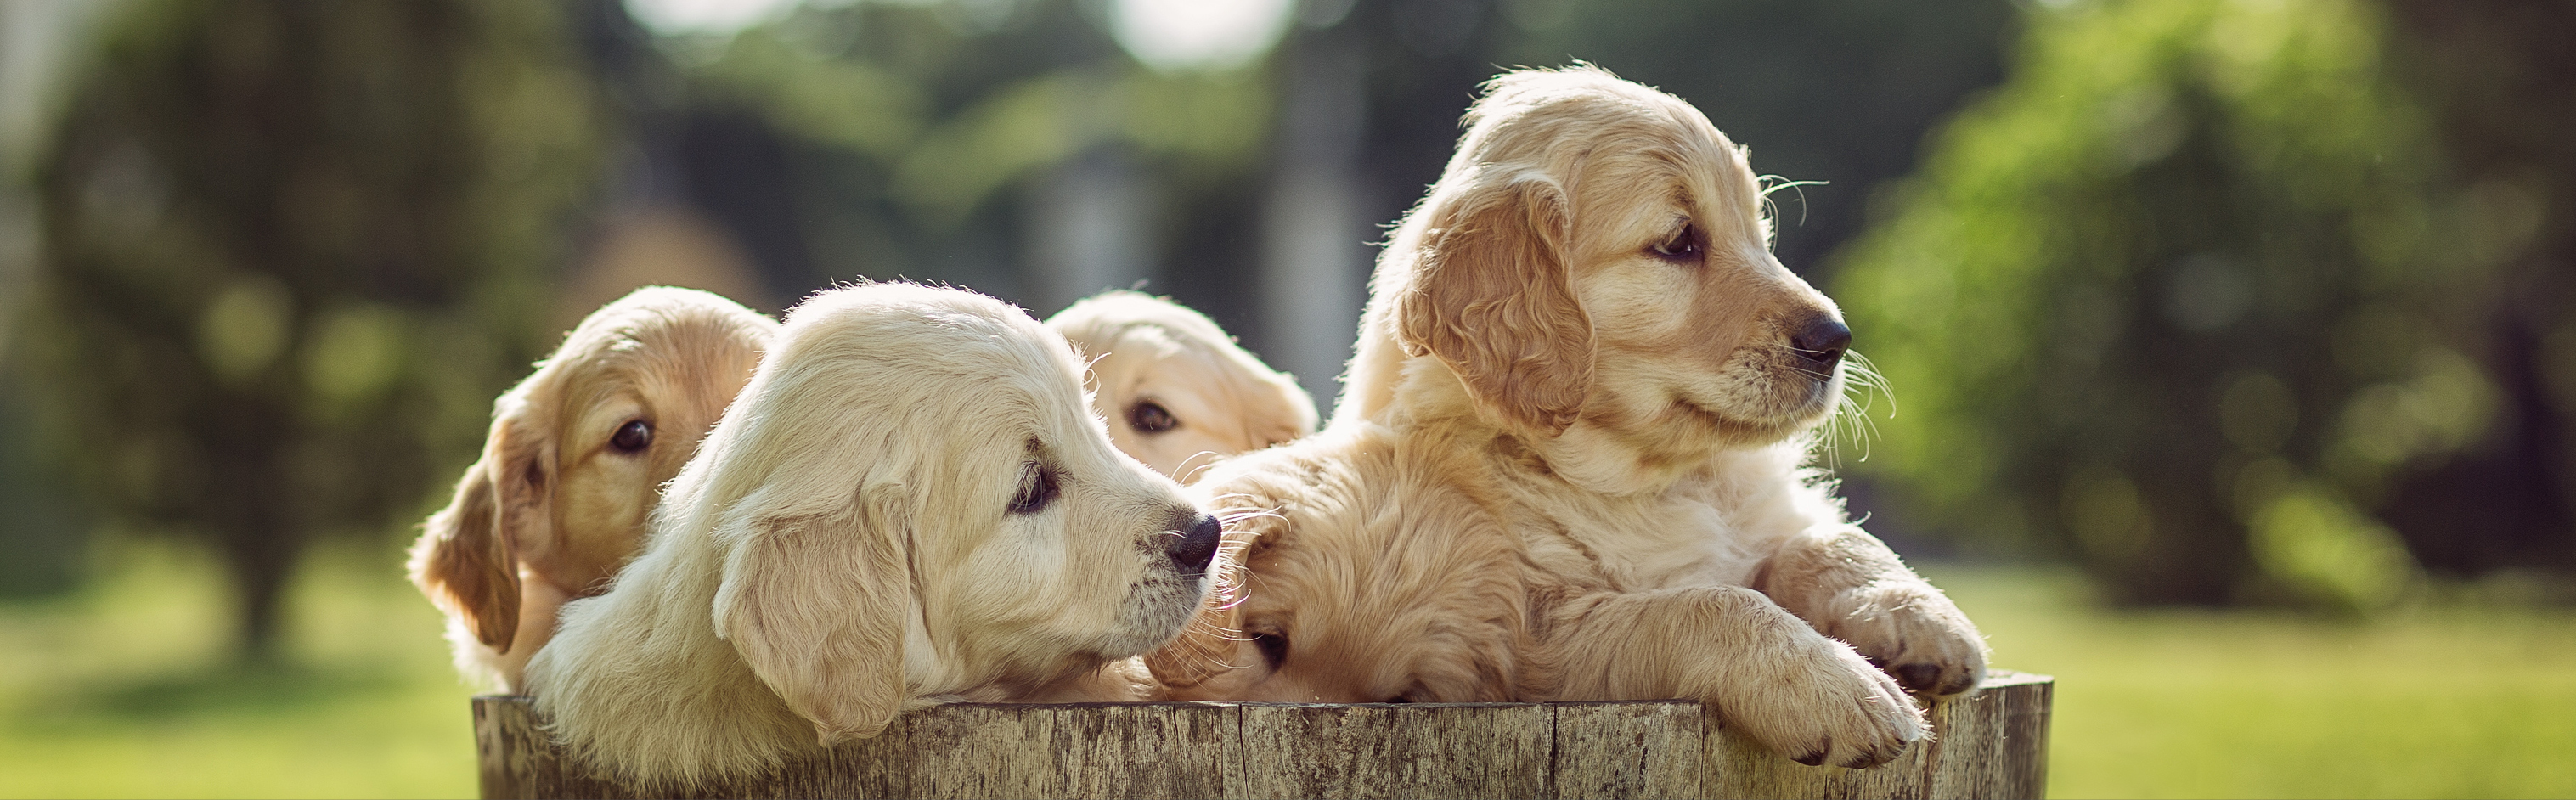  Cuccioli che guardano da un secchio di legno